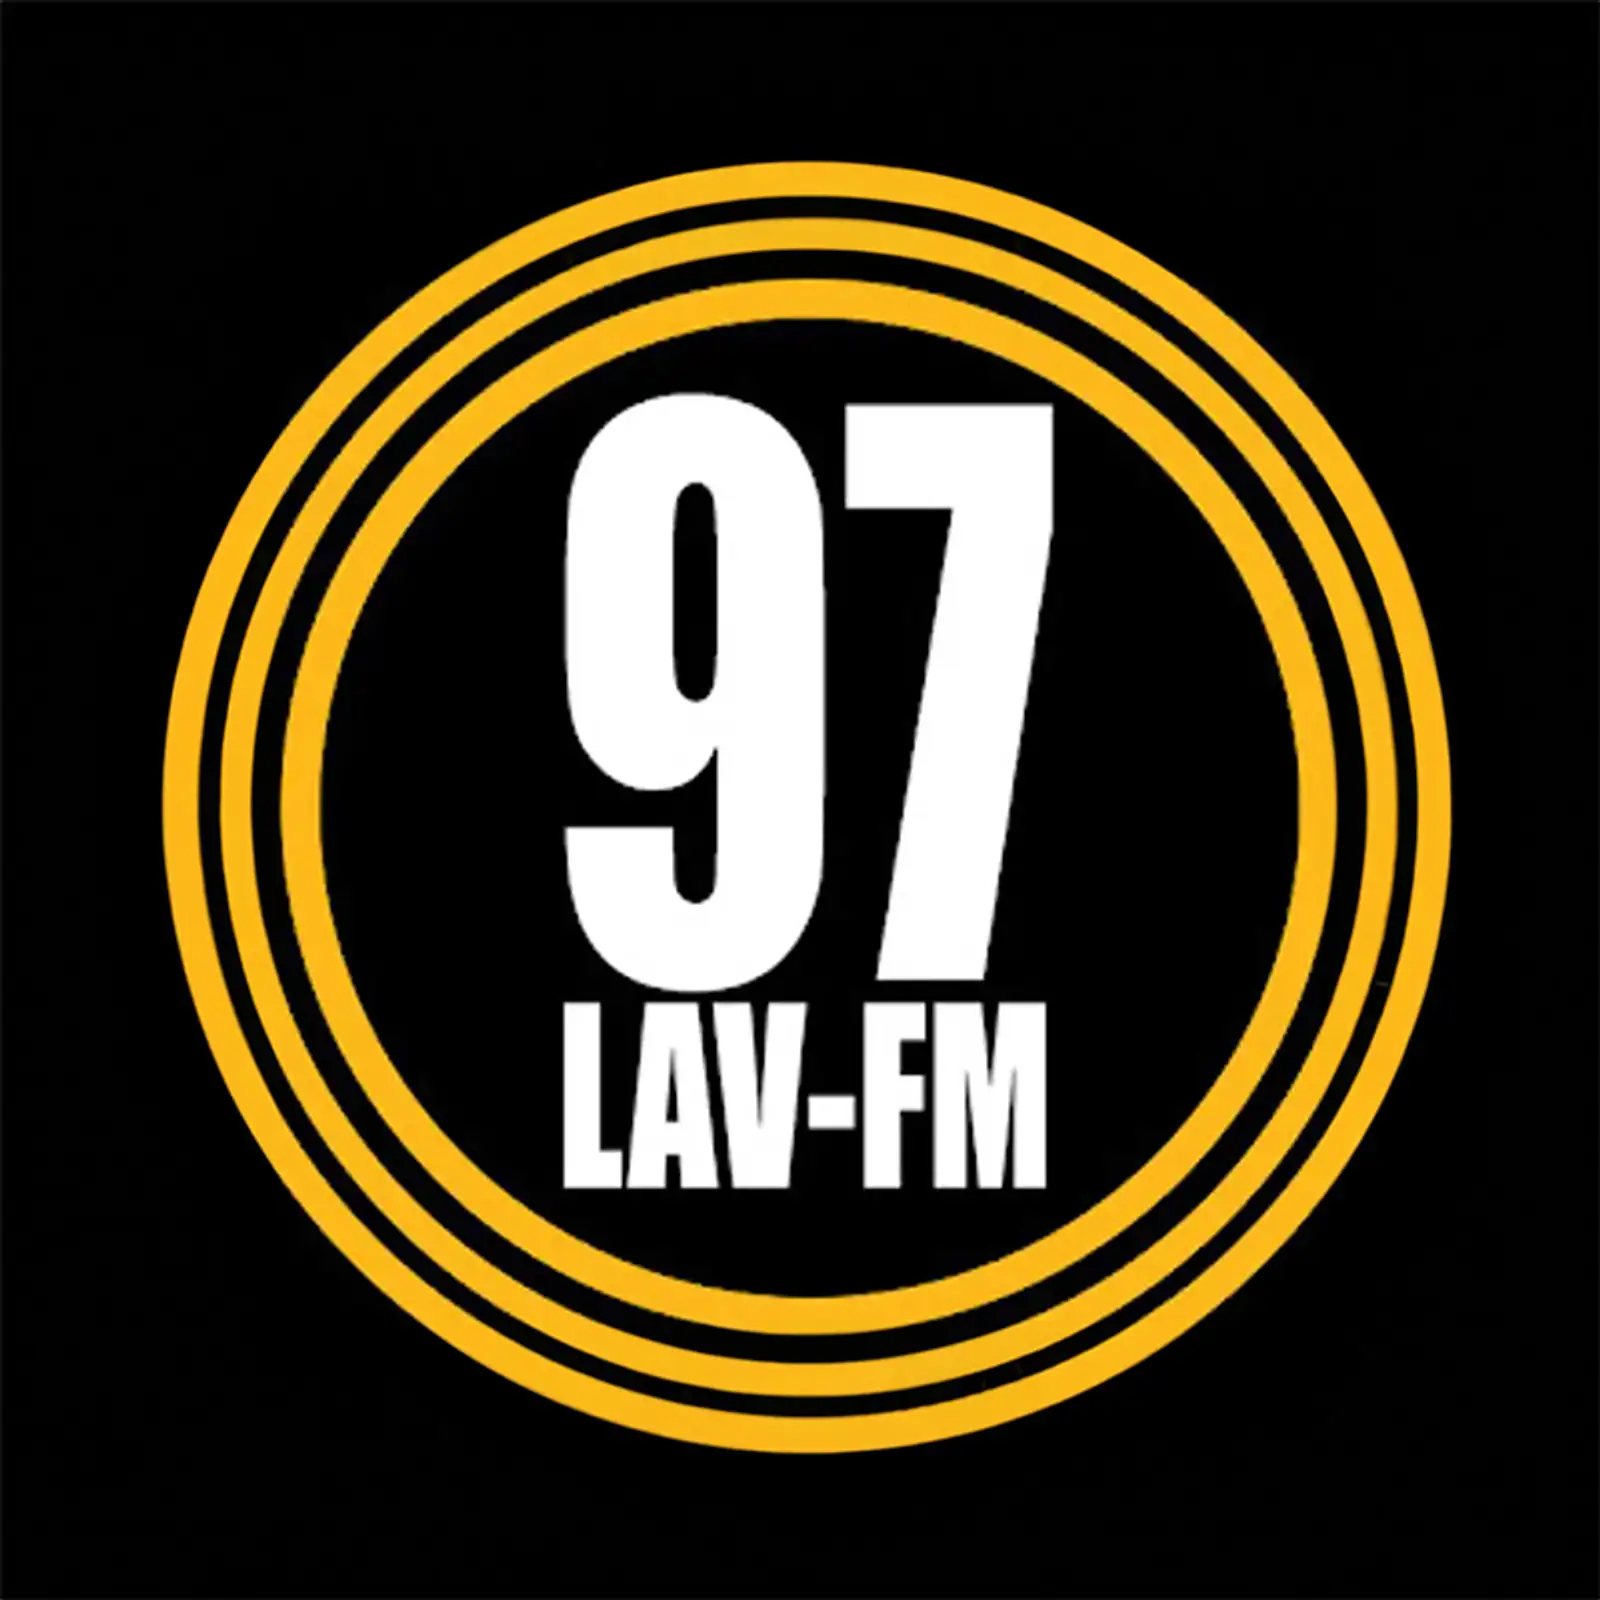 Cumulus Media, 97 LAV-FM logo